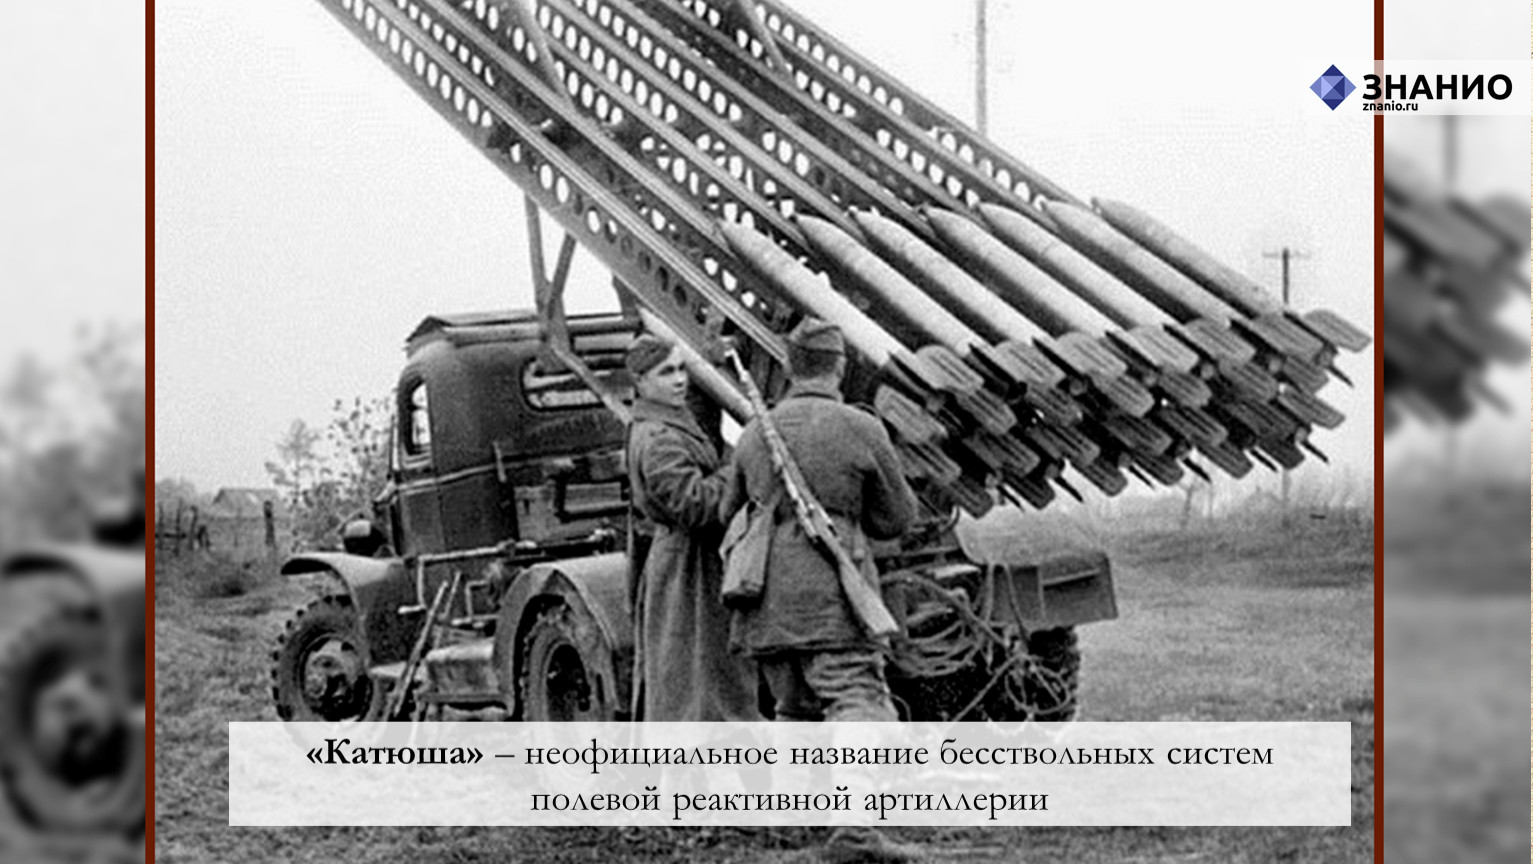 В какой битве впервые были применены катюши. Полевая реактивная артиллерия Катюша. Название бесствольной системы полевой реактивной артиллерии. Неофициальное название Катюши. Бесствольной системы полевой реактивной артиллерии России.